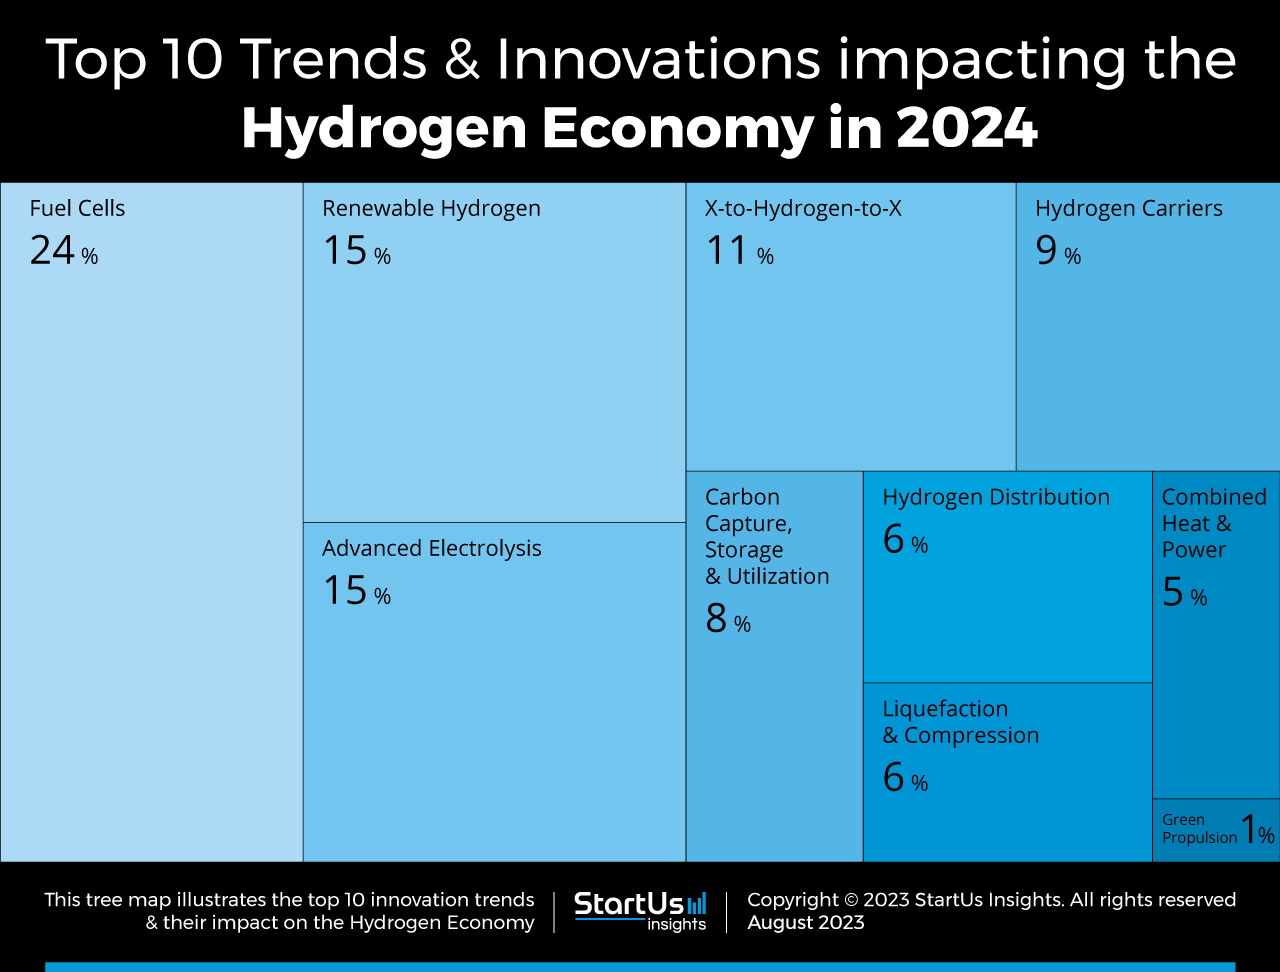 Top 10 Hydrogen Trends in 2024